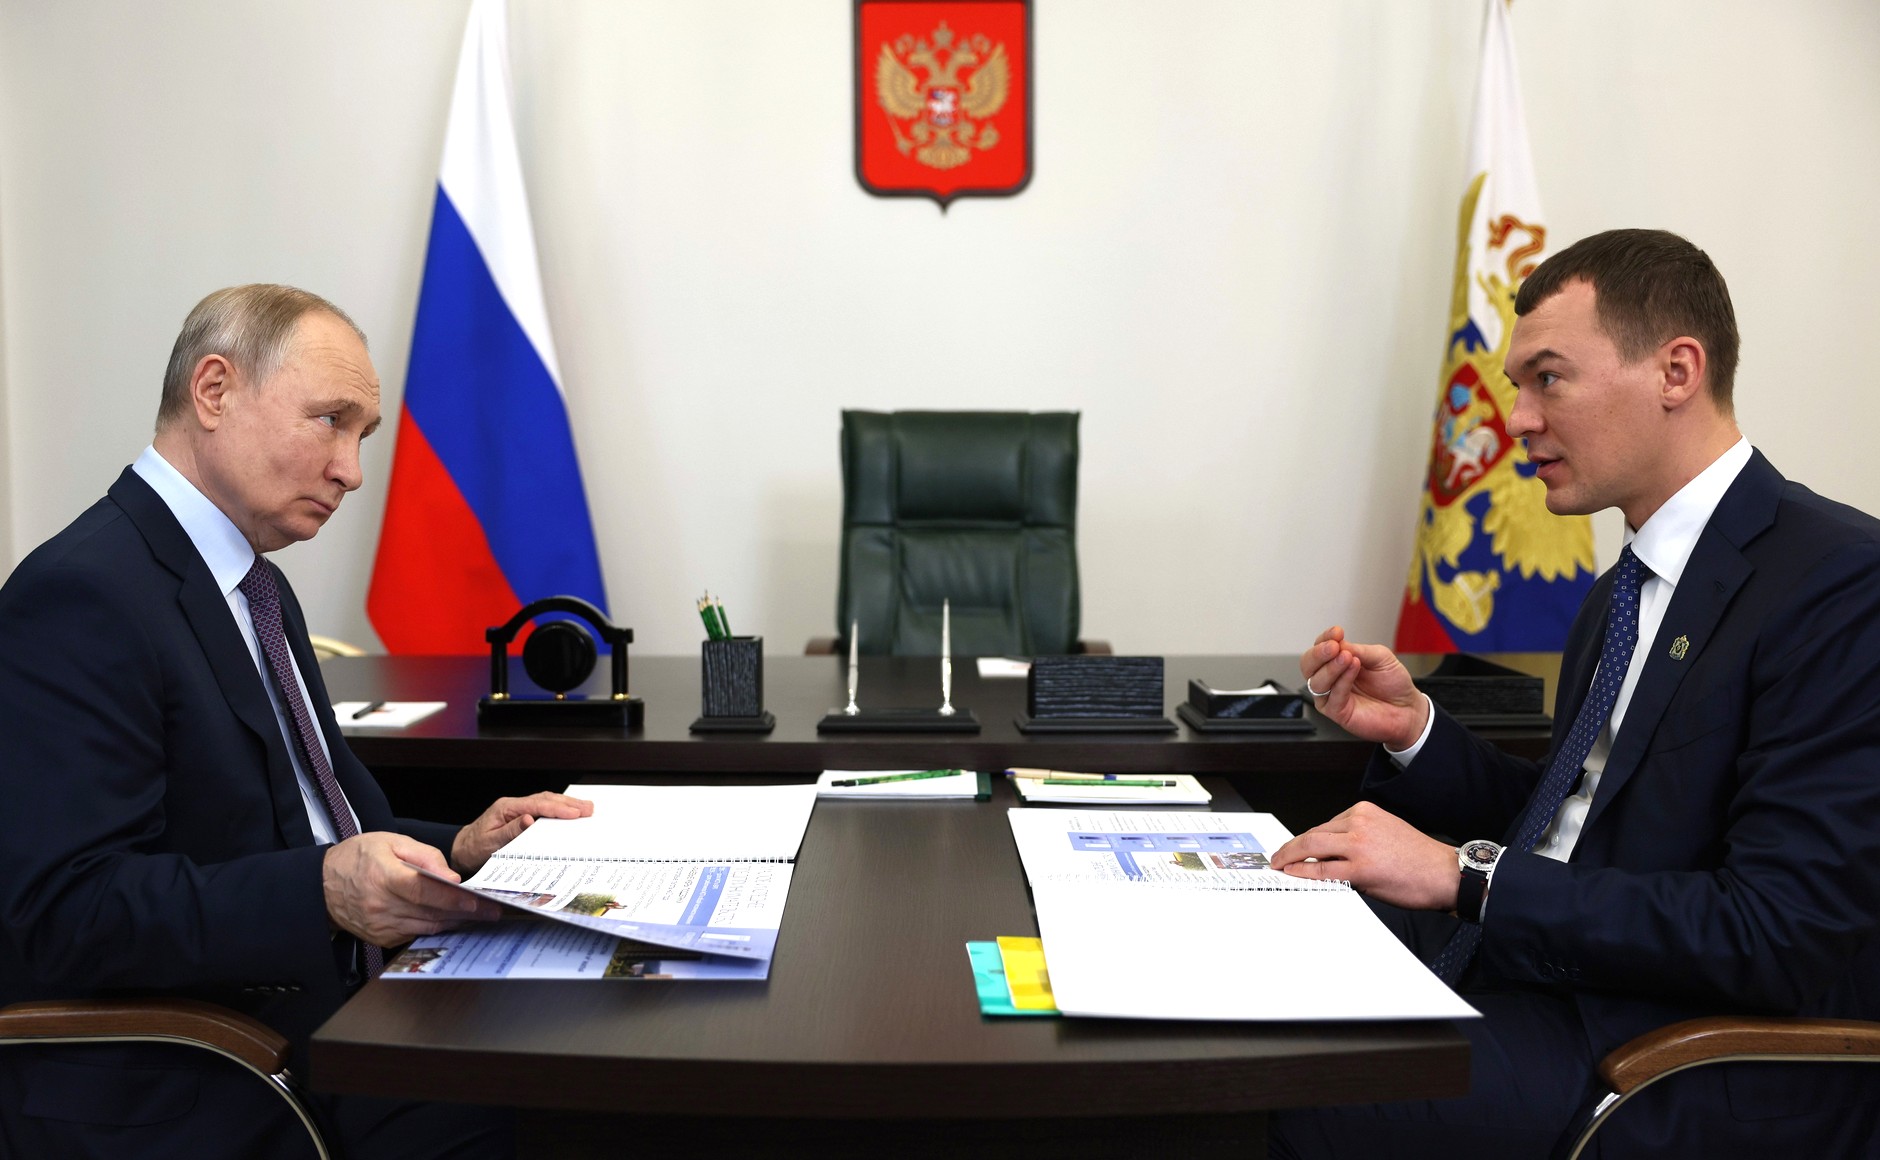 Рабочая встреча с губернатором Хабаровского края Михаилом Дегтярёвым.